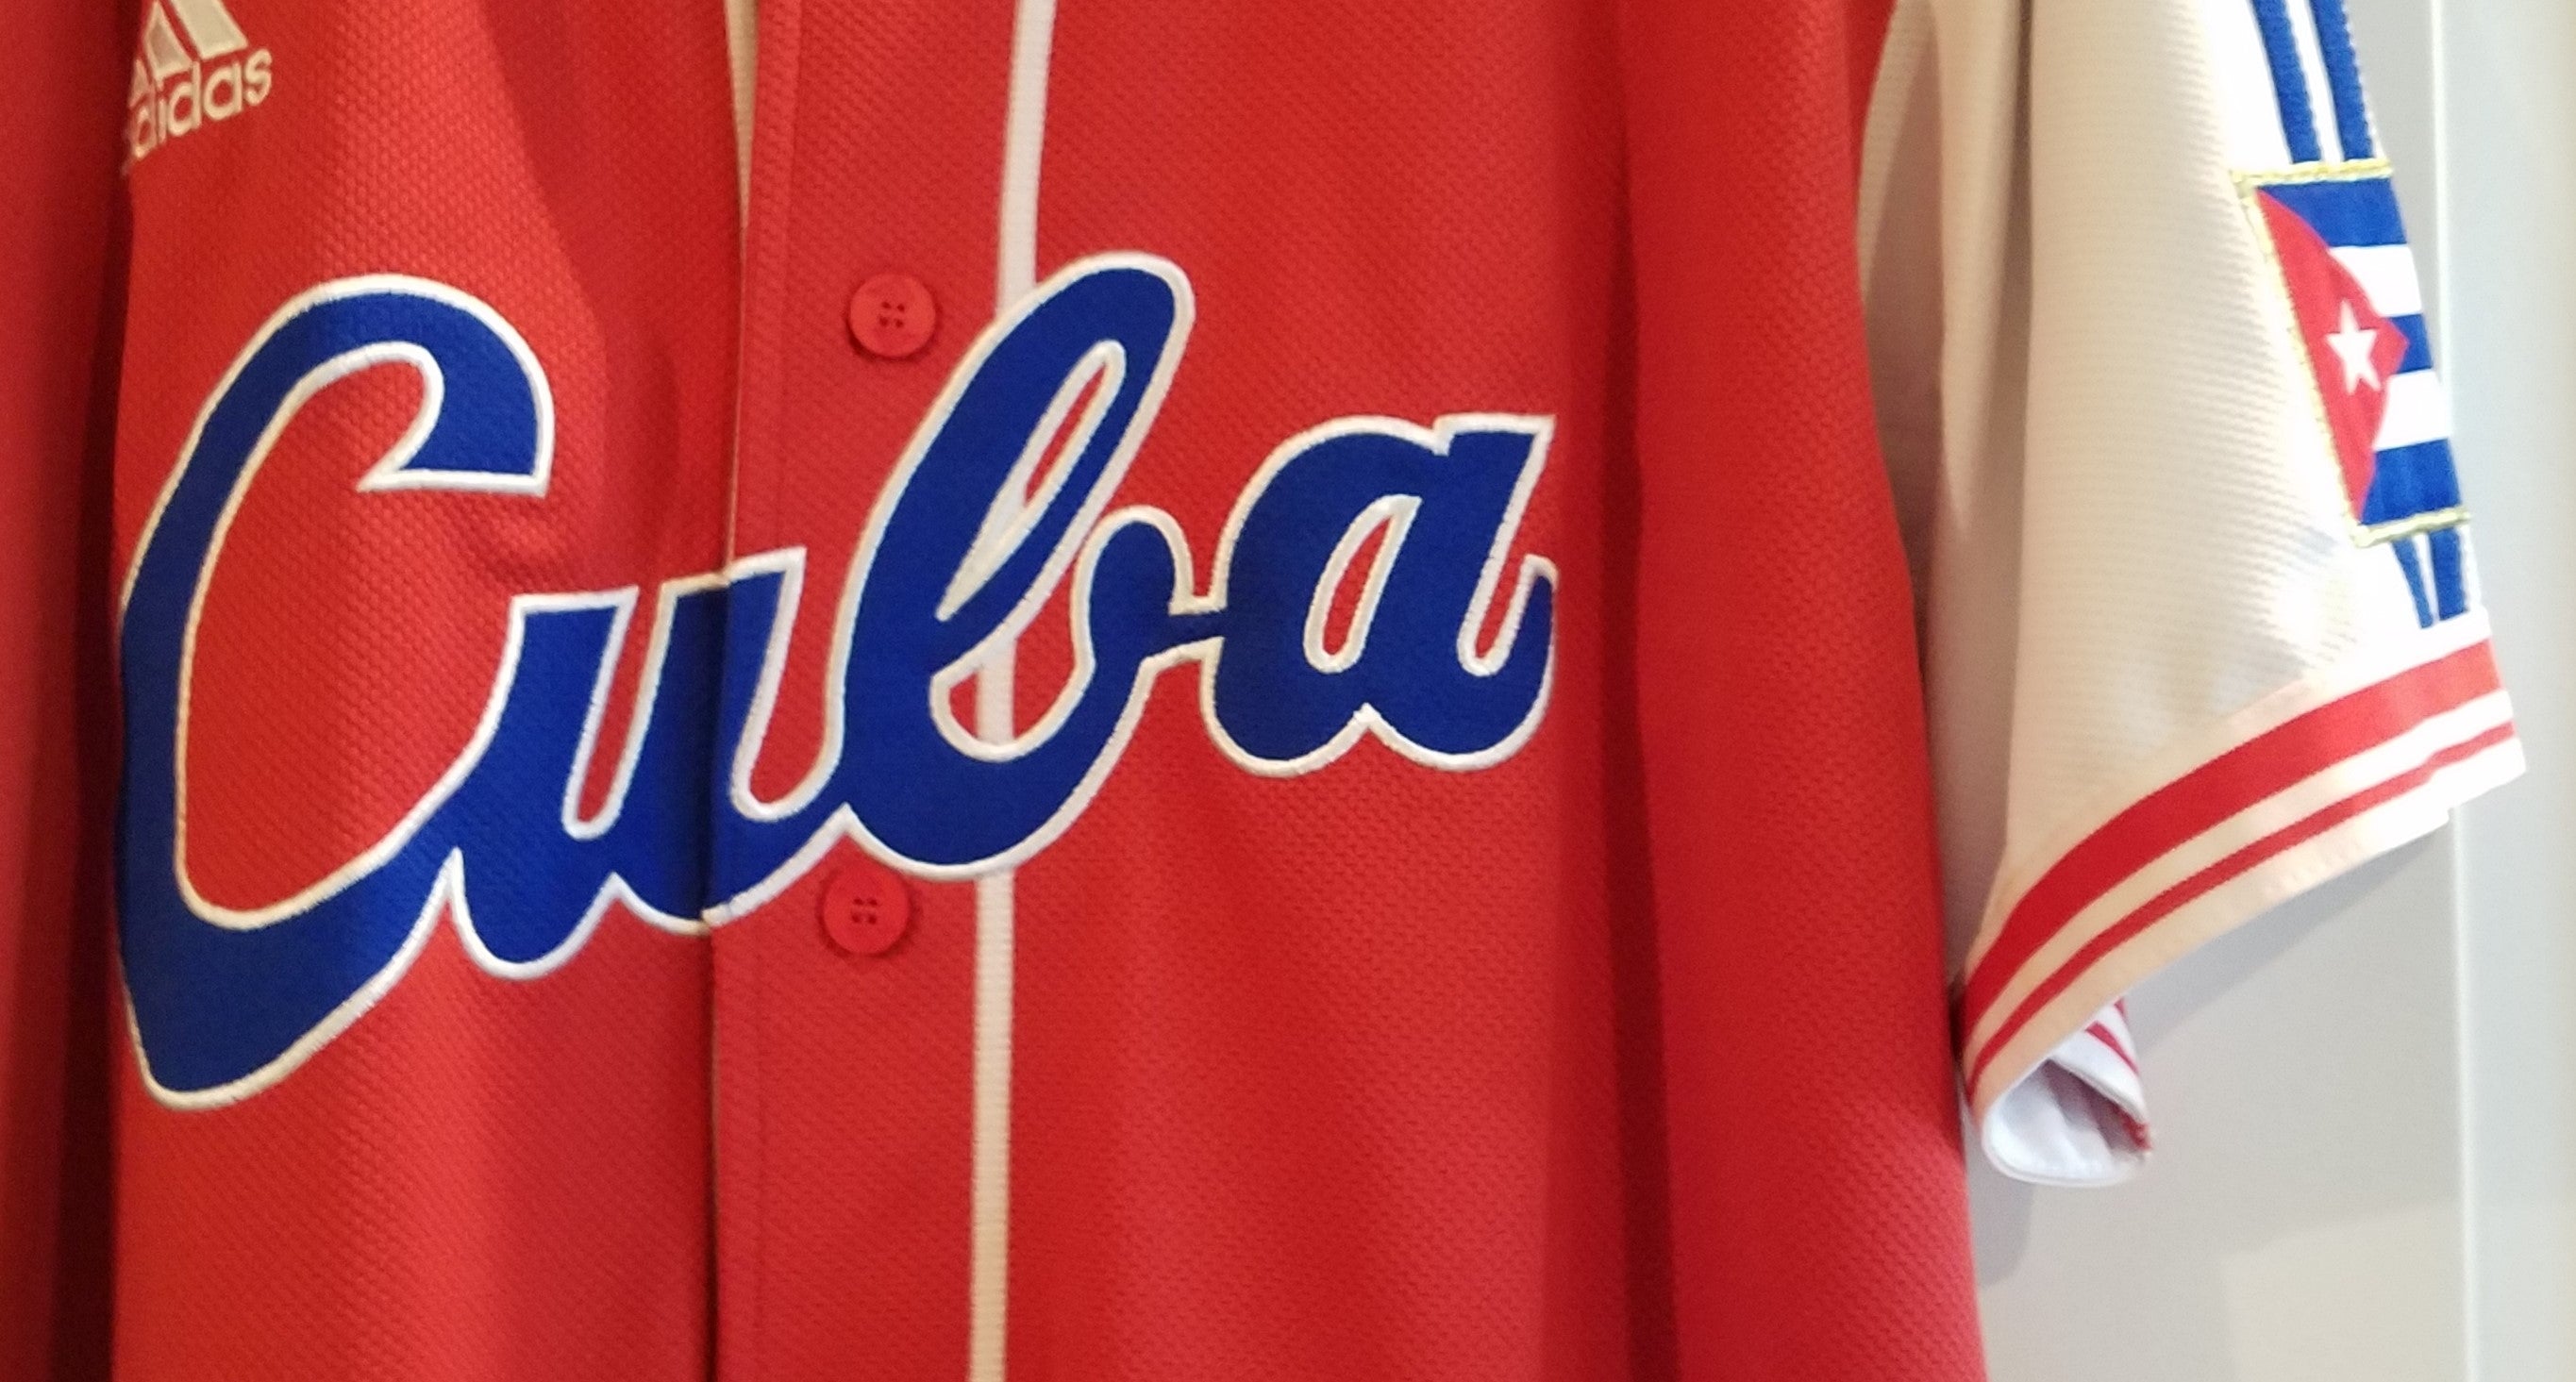 Houston Astros #10 Yuli Gurriel Stitched Orange Jersey